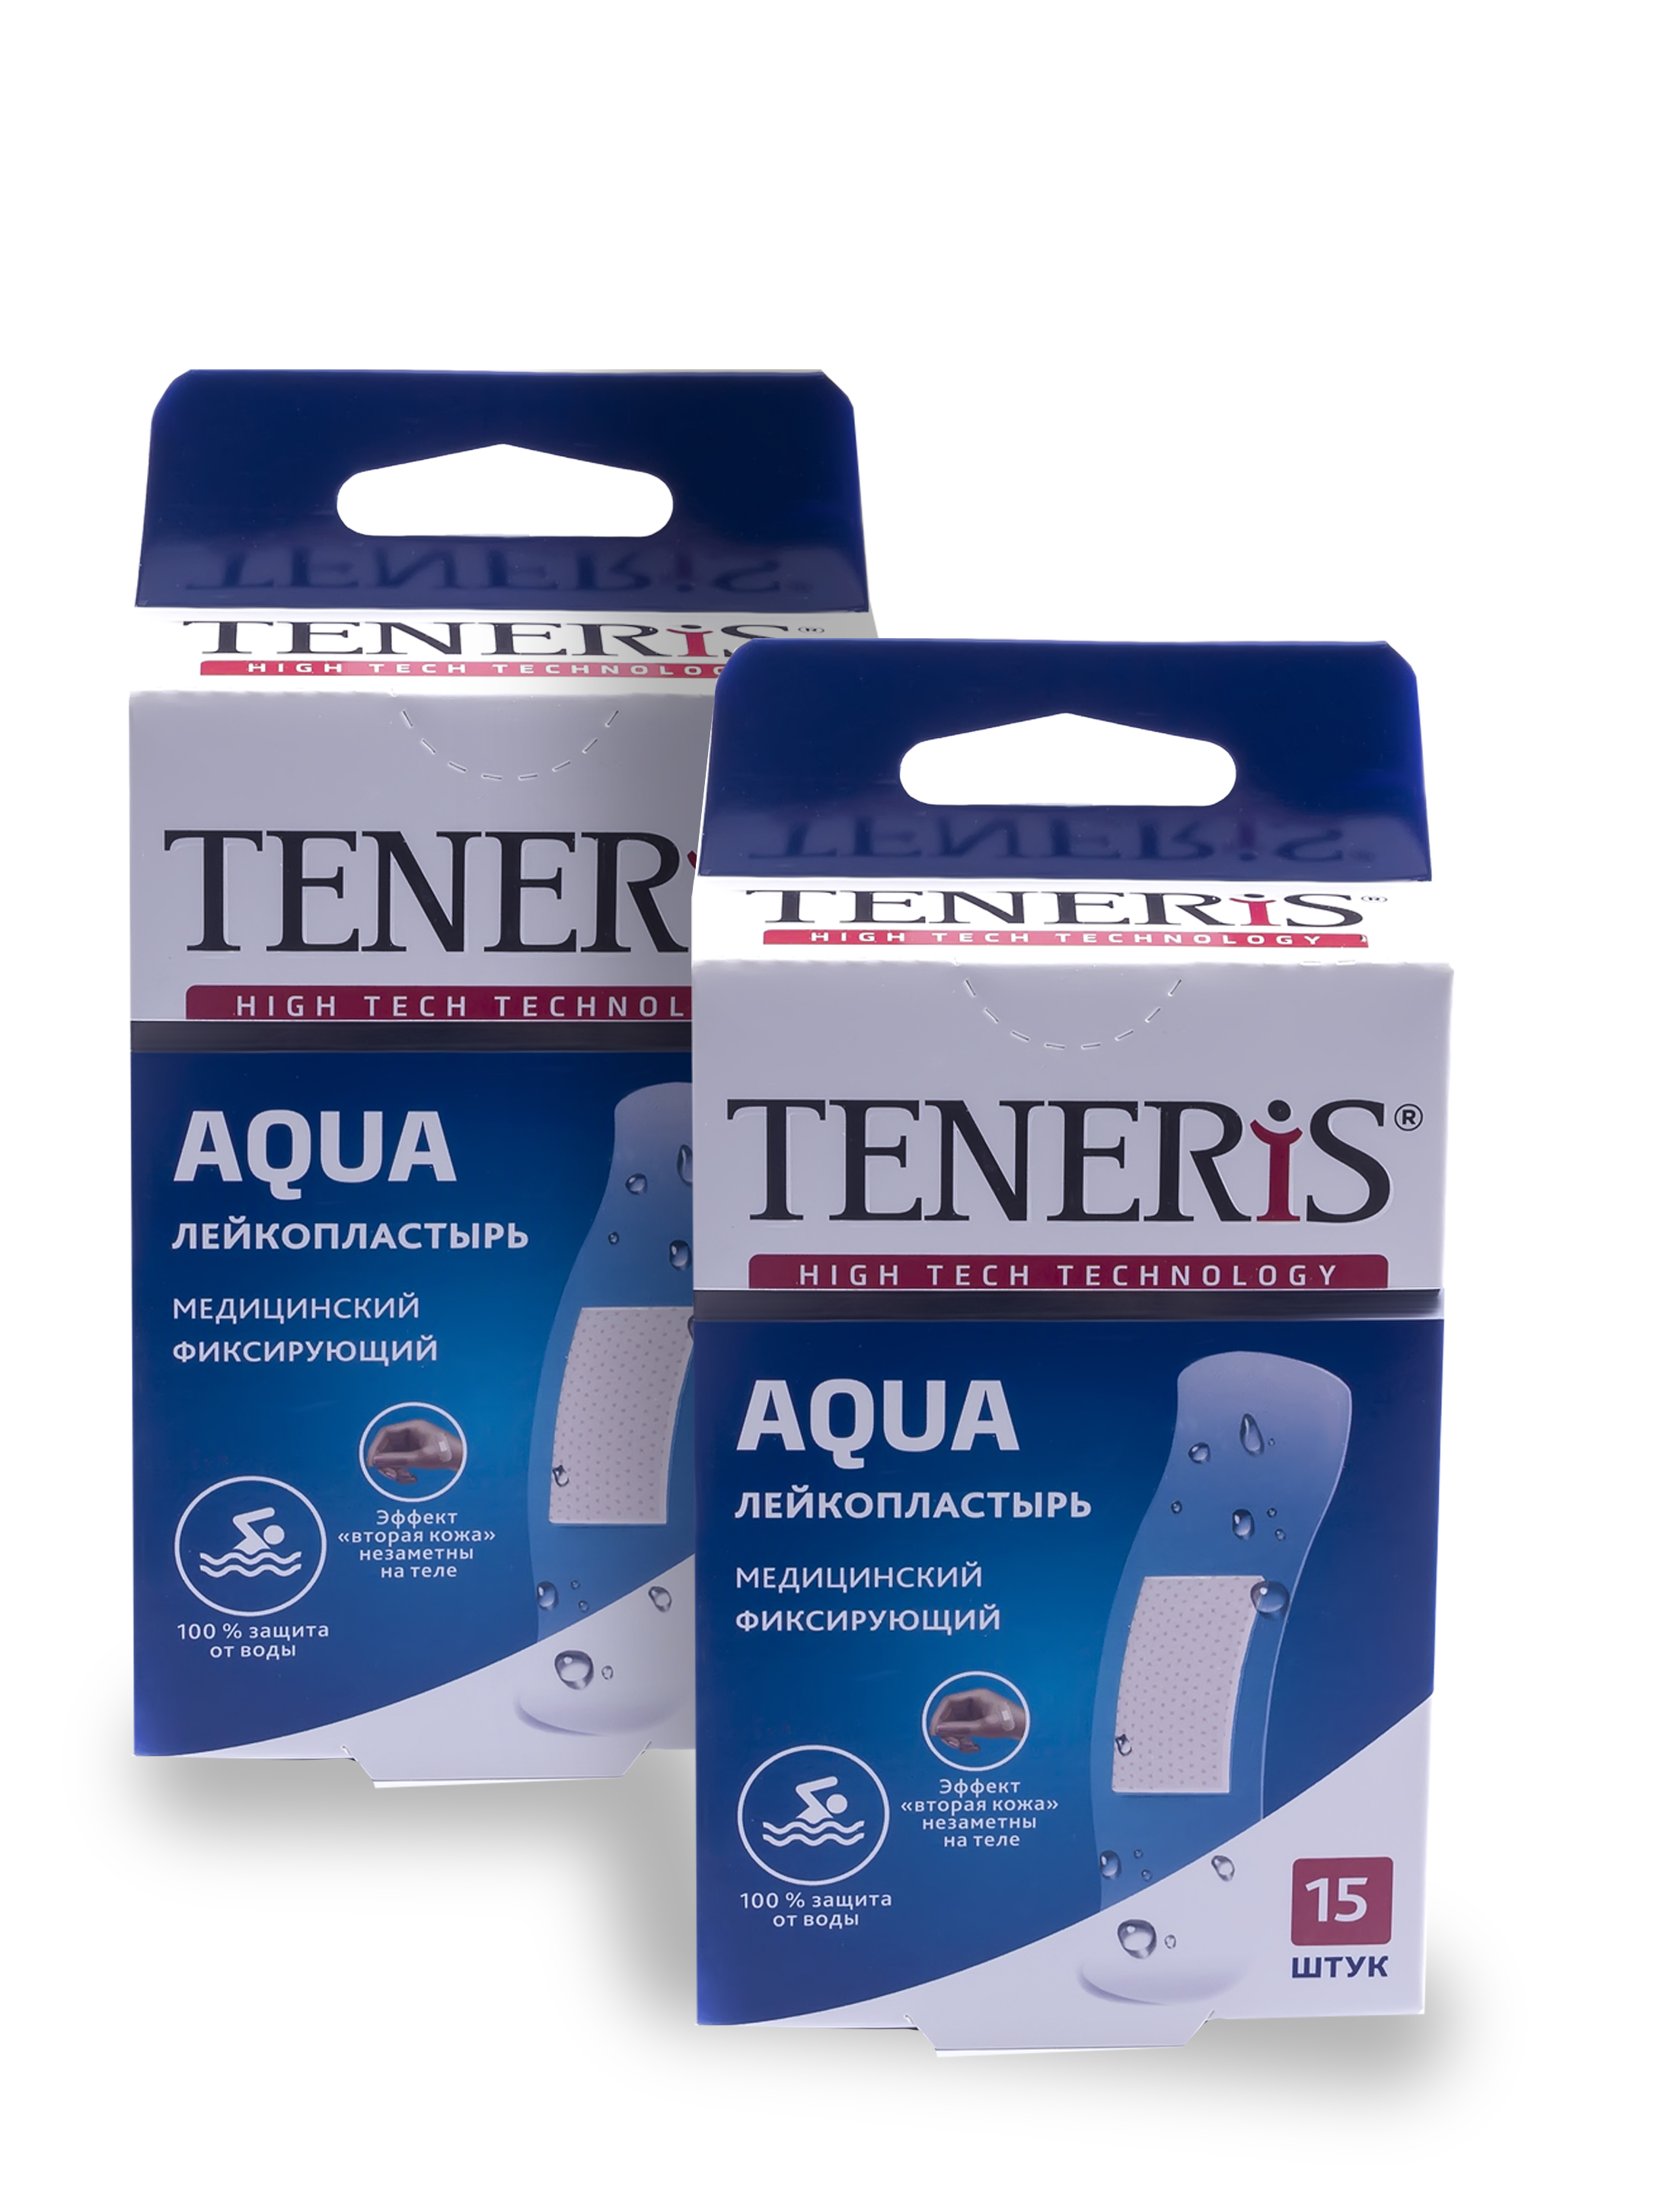 Купить TENERIS AQUA Лейкопластырь водонепроницаемый медицинский фиксирующий на полимерной основе 15+15 шт., Лейкопластырь TENERIS AQUA водонепроницаемый фиксирующий на полимерной основе 15+15 шт.